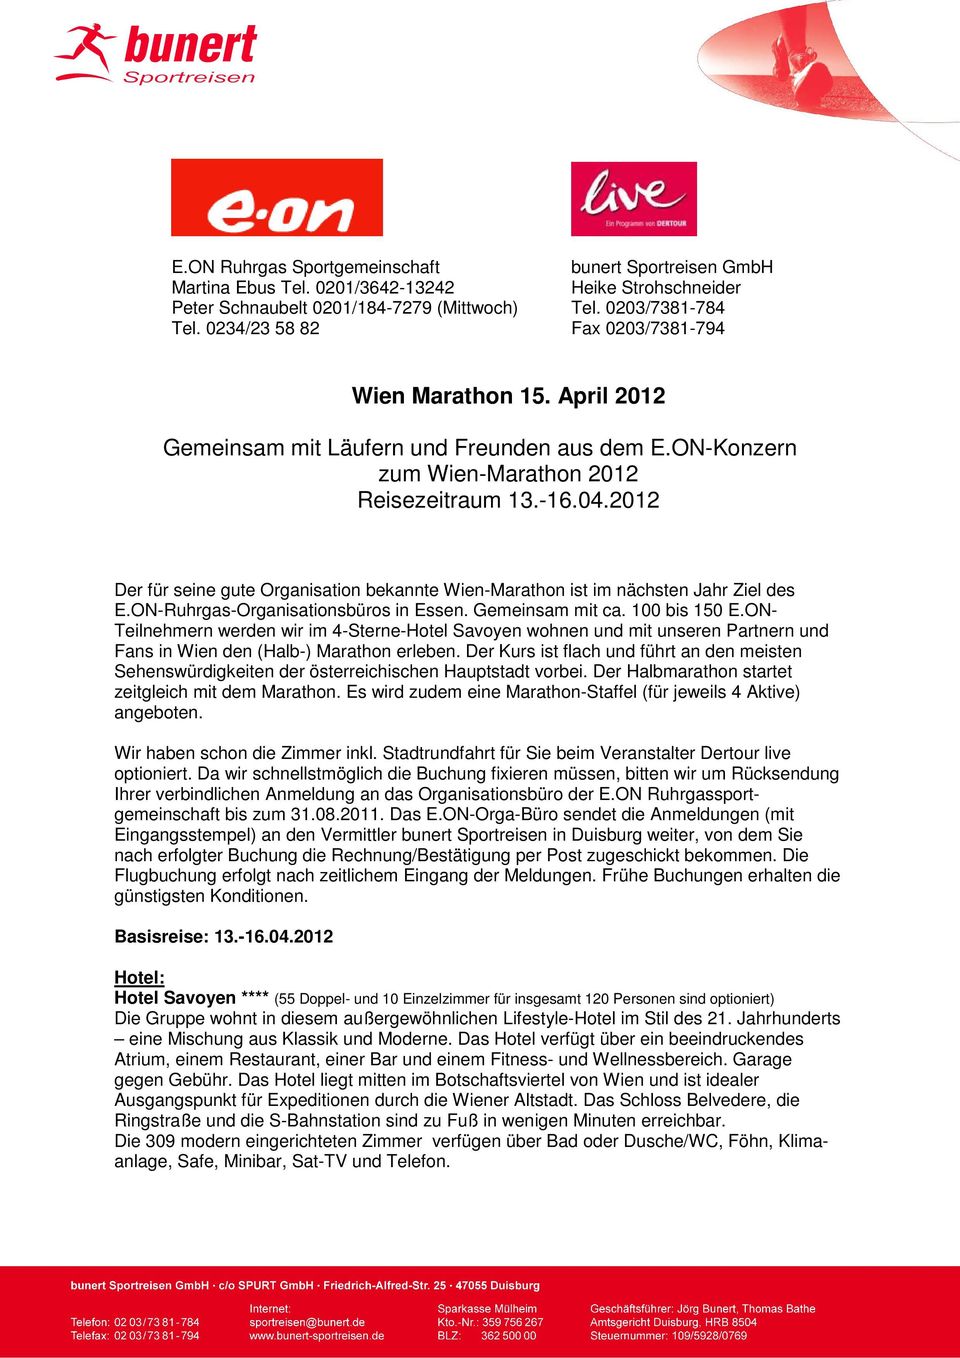 2012 Der für seine gute Organisation bekannte Wien-Marathon ist im nächsten Jahr Ziel des E.ON-Ruhrgas-Organisationsbüros in Essen. Gemeinsam mit ca. 100 bis 150 E.